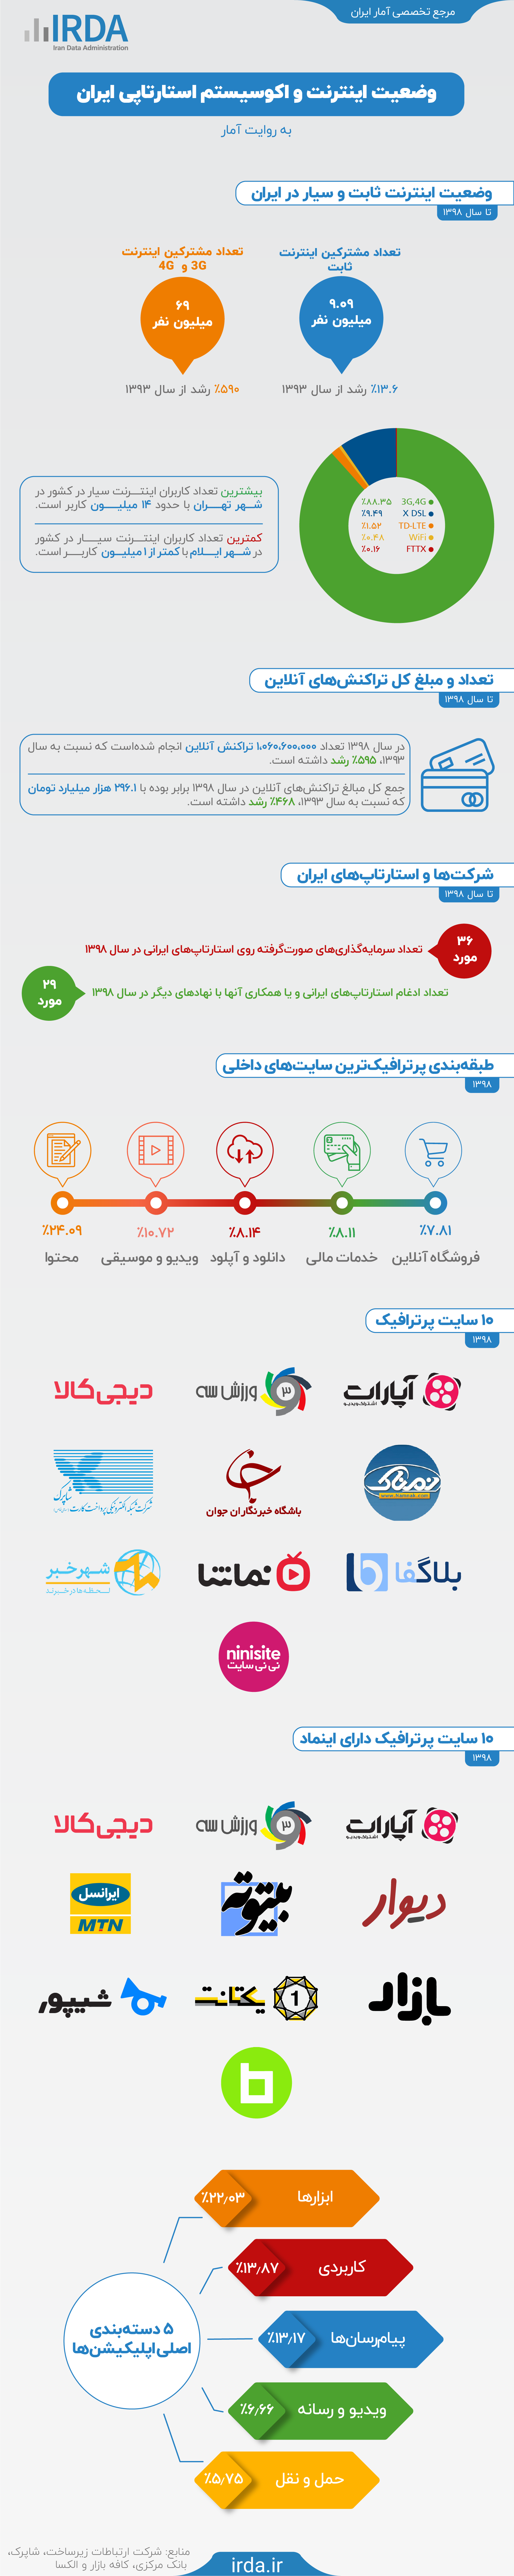 وضعیت اینترنت و اکوسیستم استارتاپی ایران به روایت آمار